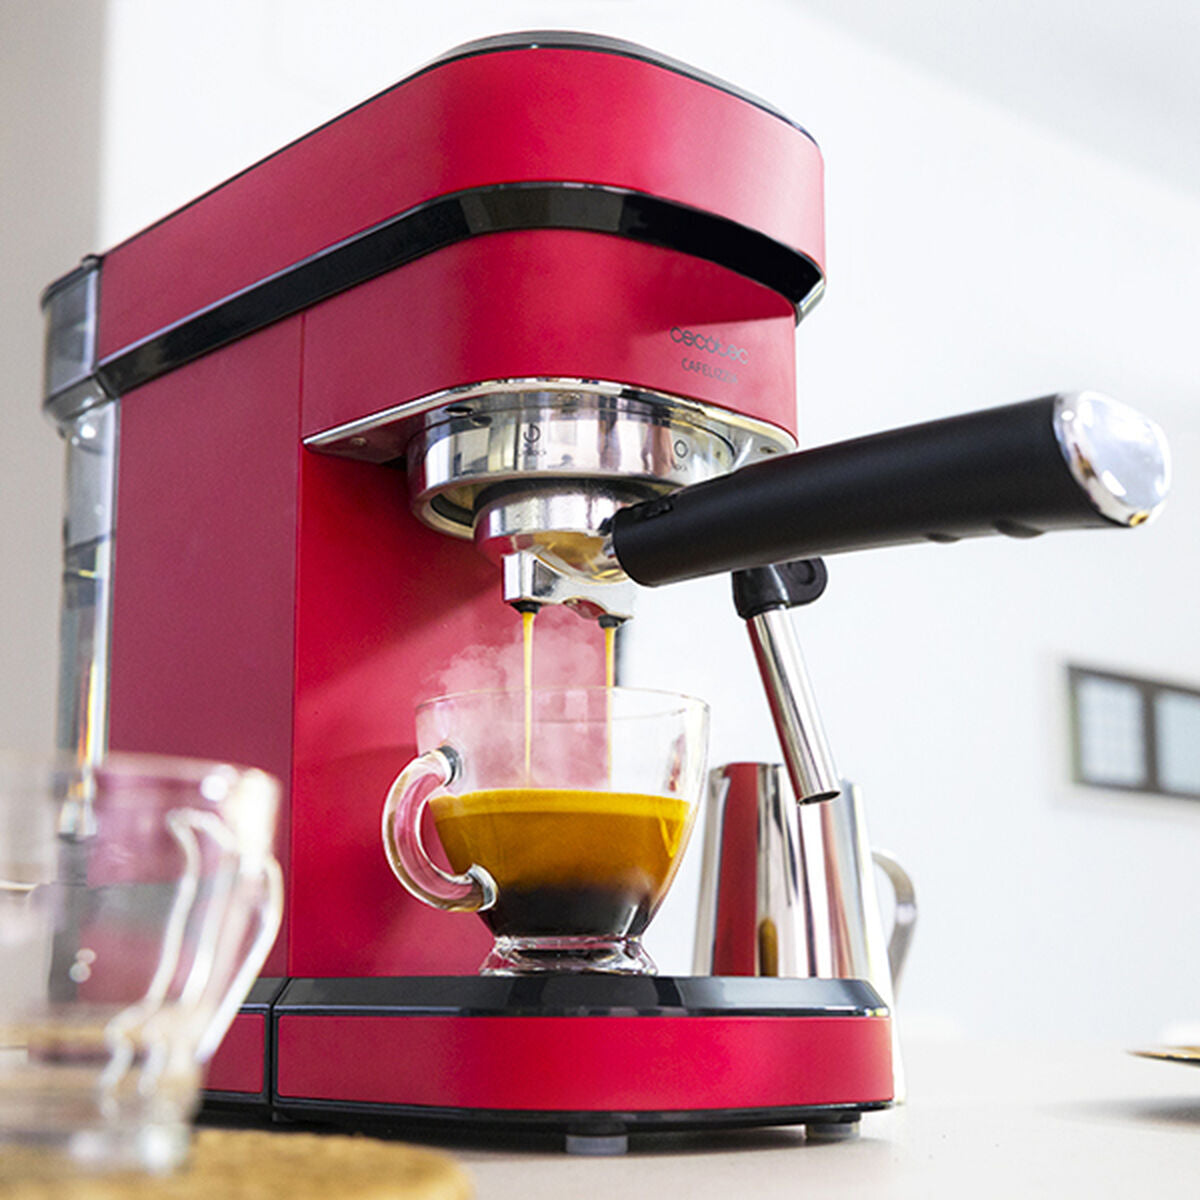 Machine de café manuelle express Cecotec Cafelizzia 790 Shiny 1,2 L 20